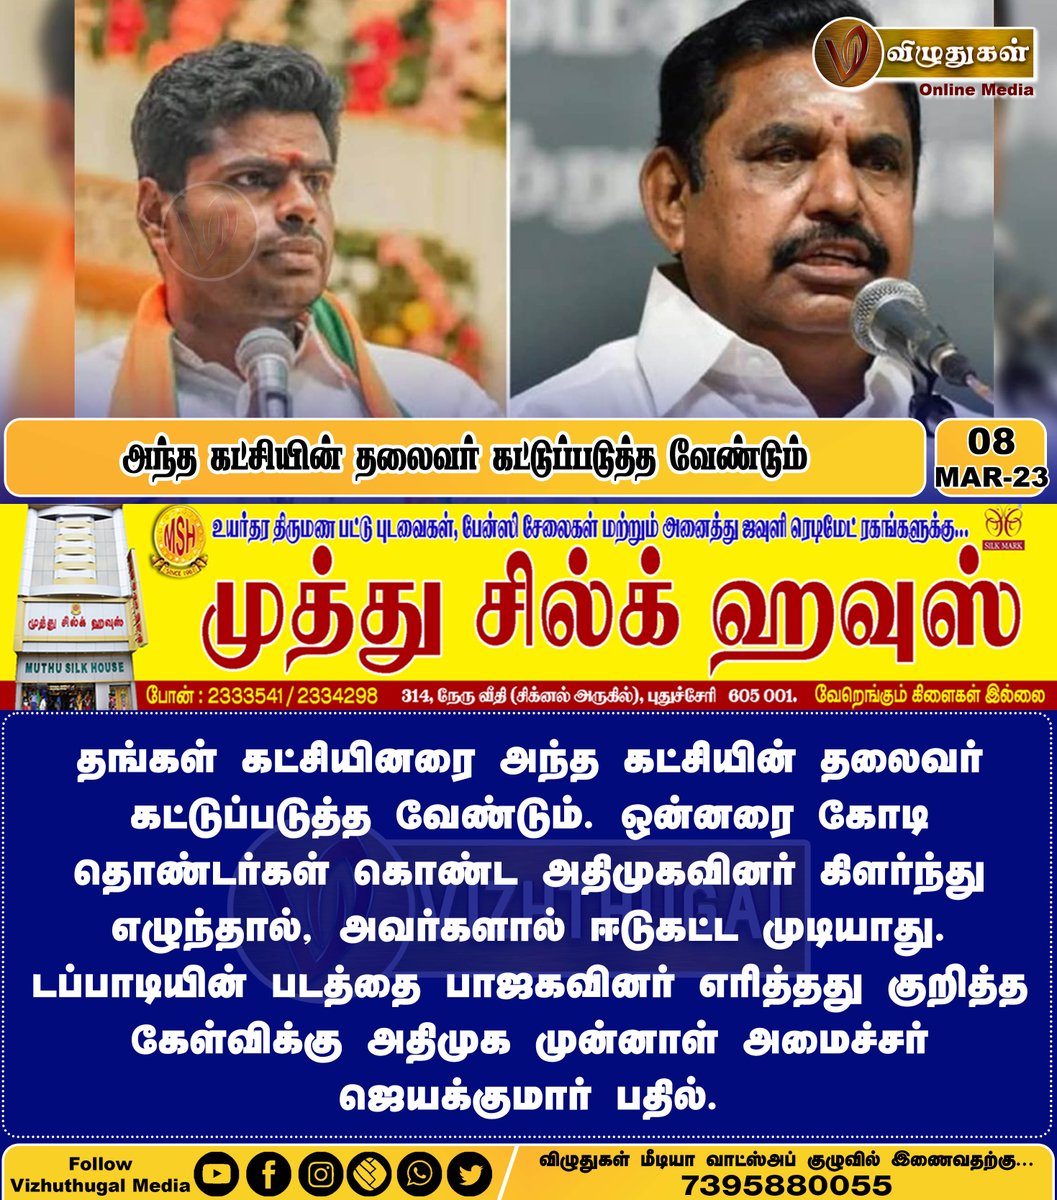 அந்த கட்சியின் தலைவர் கட்டுப்படுத்த வேண்டும்
#ministerjayakumar #ADMK #TamilnaduBJP #photoburnt #EdapadiPalanisamy #ADMKnews